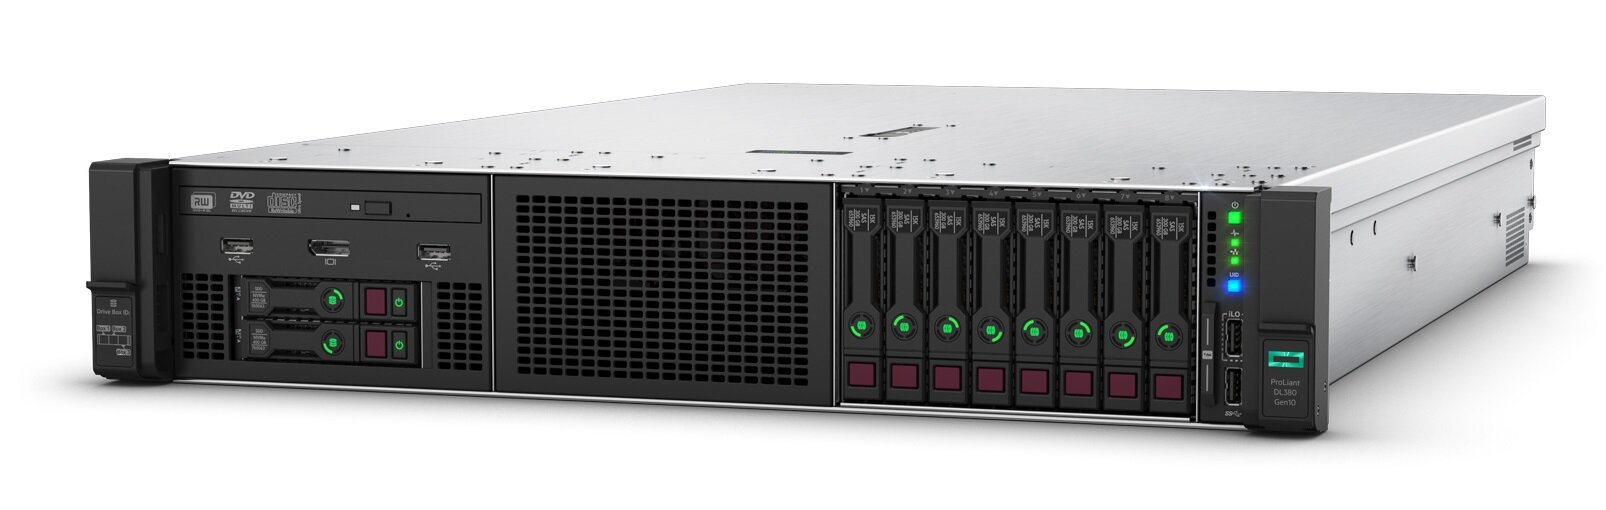 Сервер HPE Proliant DL180 Gen10, 1(up2)x 4208 Xeon-S 8C 2.1GHz, 1x16GB-R DDR4, S100i/ZM (RAID 0,1,5,10) noHDD (8 SFF 2.5quot; HP) 1x500W (up2), 2x1Gb/s, noDVD, iLO5, Rack2U, 3-3-3 P19564-B21